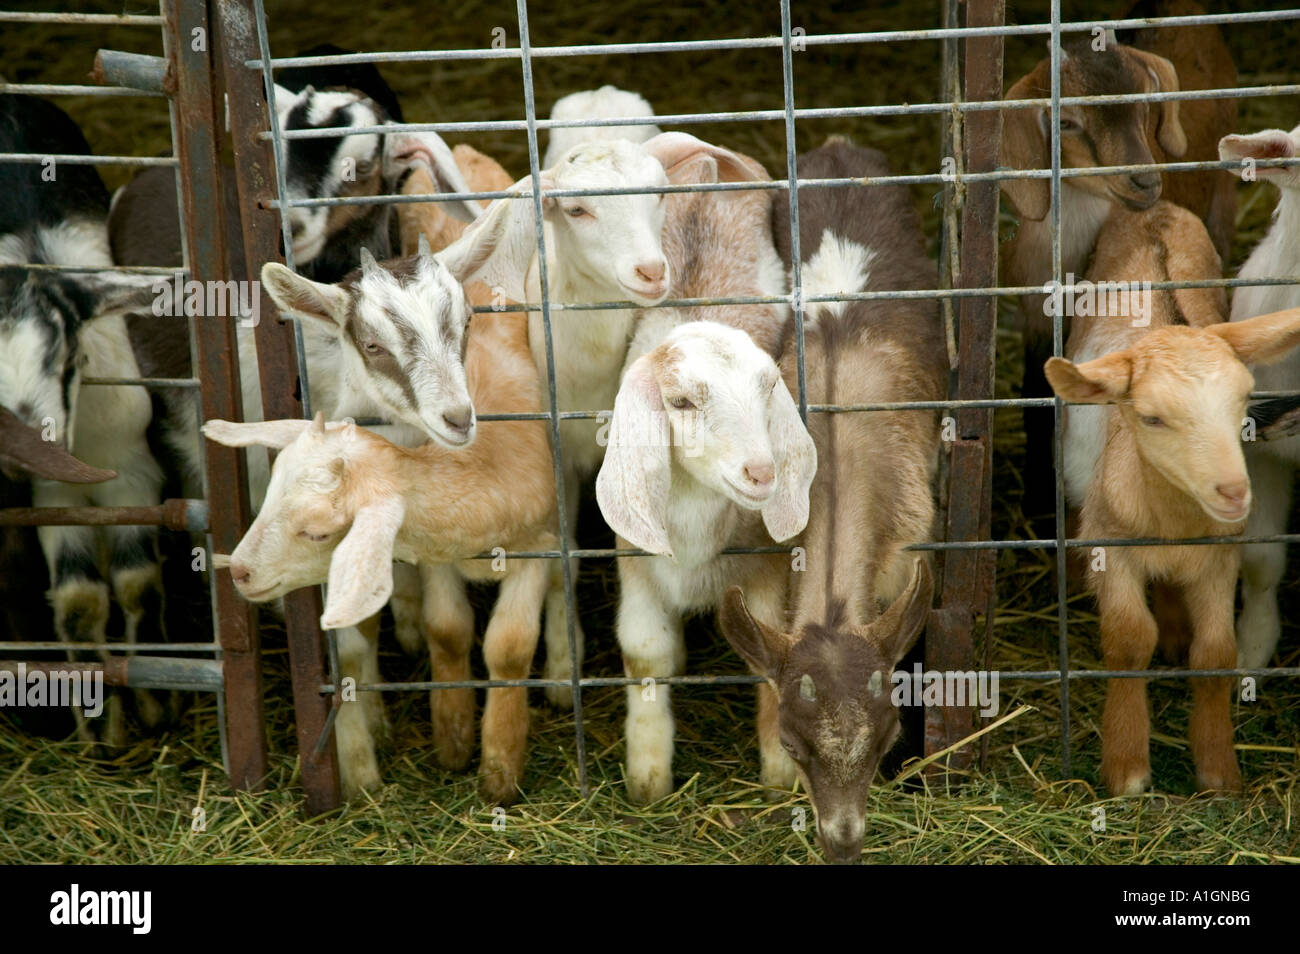 Kinder, junge Ziegen eingepfercht, Molkerei Ziegenhof, Stockfoto